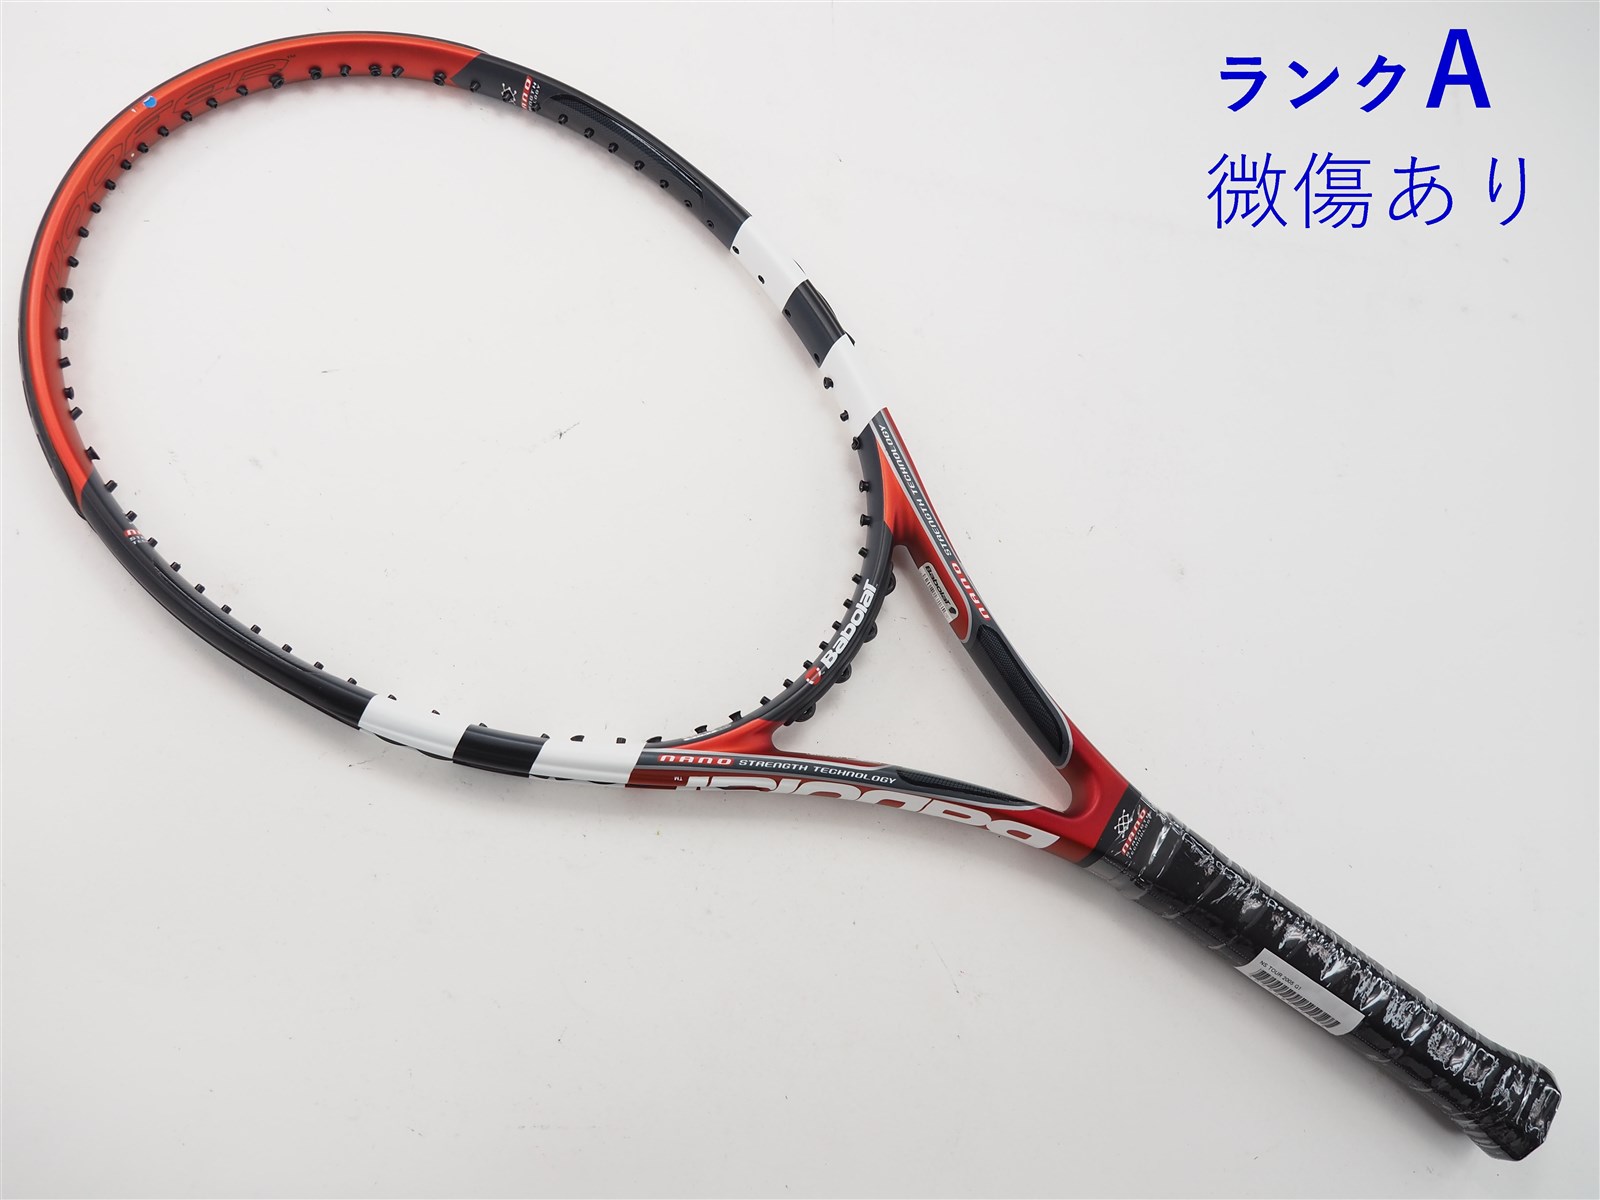 テニスラケット バボラ エヌエス ツアー 2005年モデル (G1)BABOLAT NS